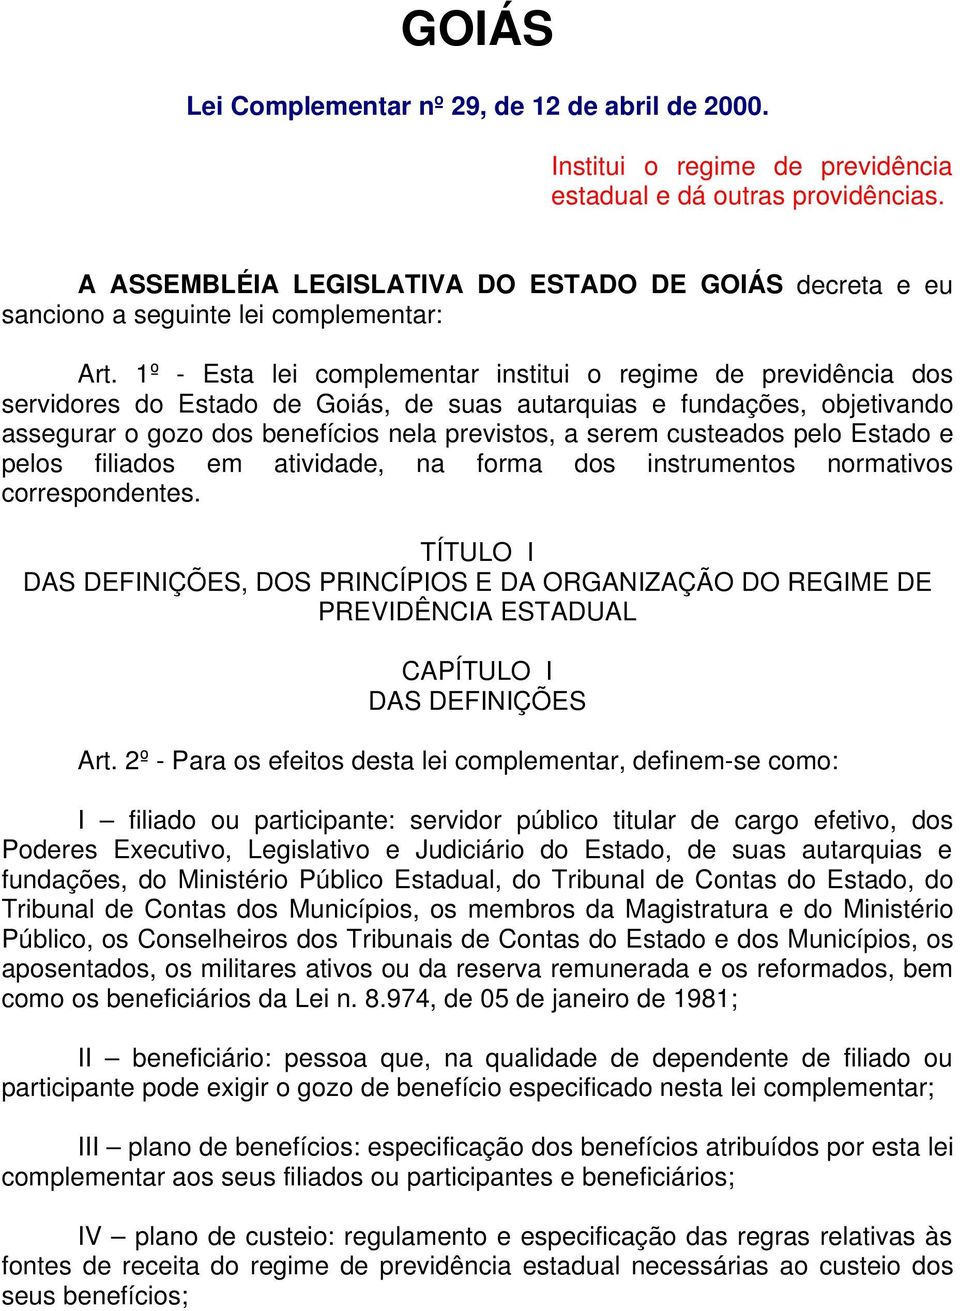 1º - Esta lei complementar institui o regime de previdência dos servidores do Estado de Goiás, de suas autarquias e fundações, objetivando assegurar o gozo dos benefícios nela previstos, a serem